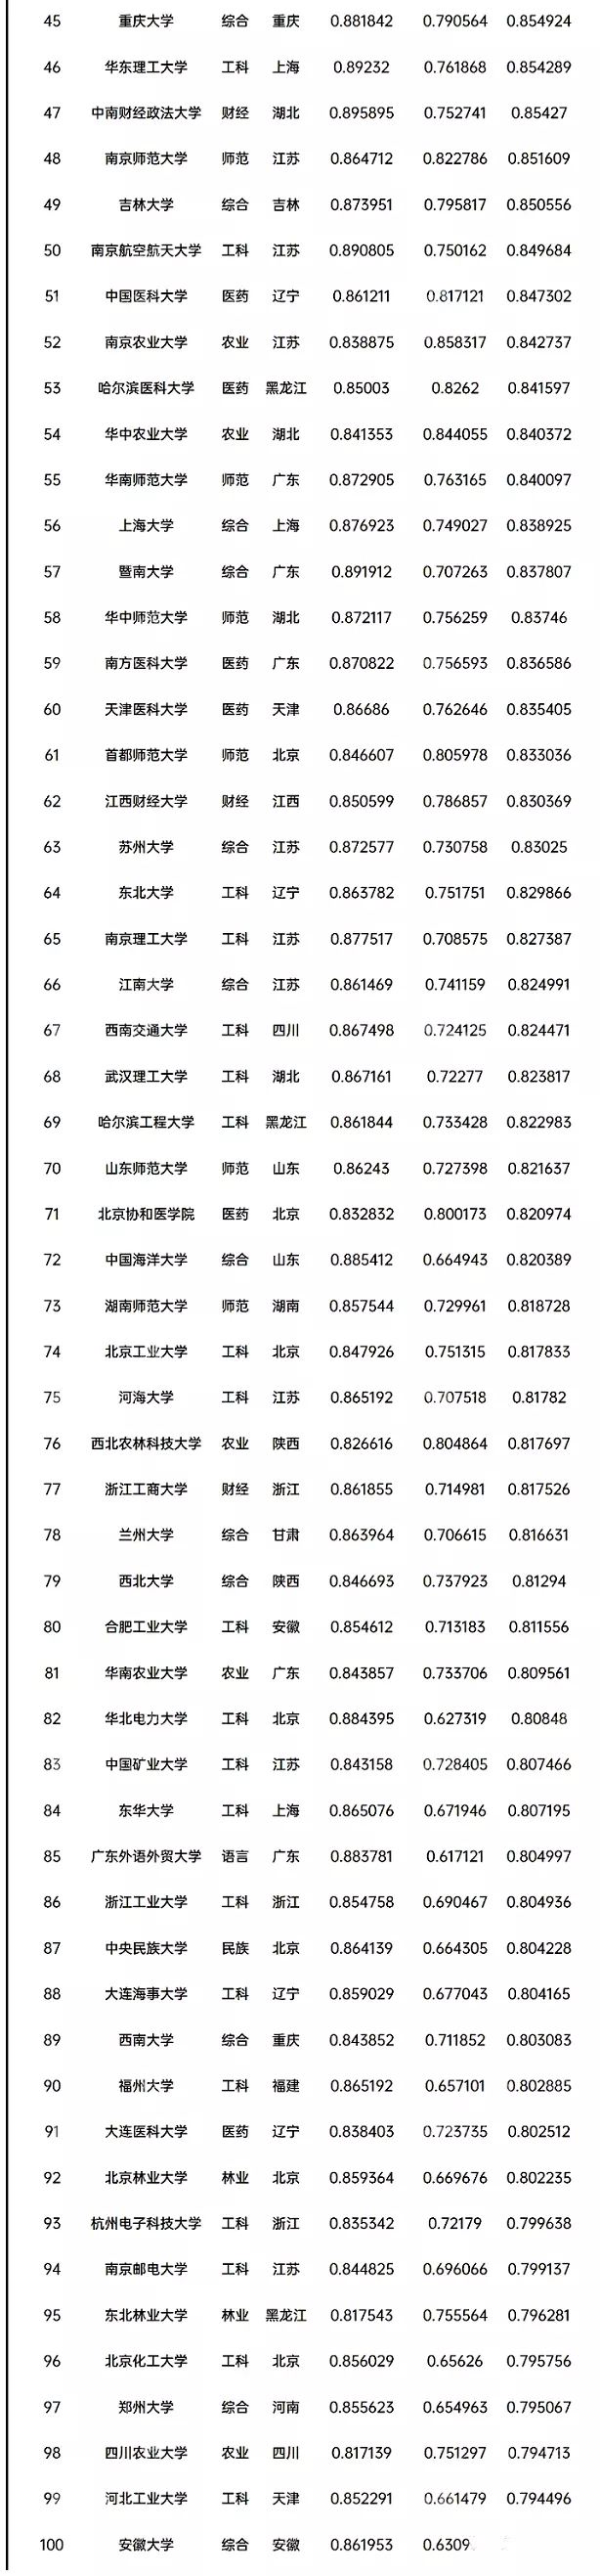 5、全国人口排名省份:中国人口排名 省份？